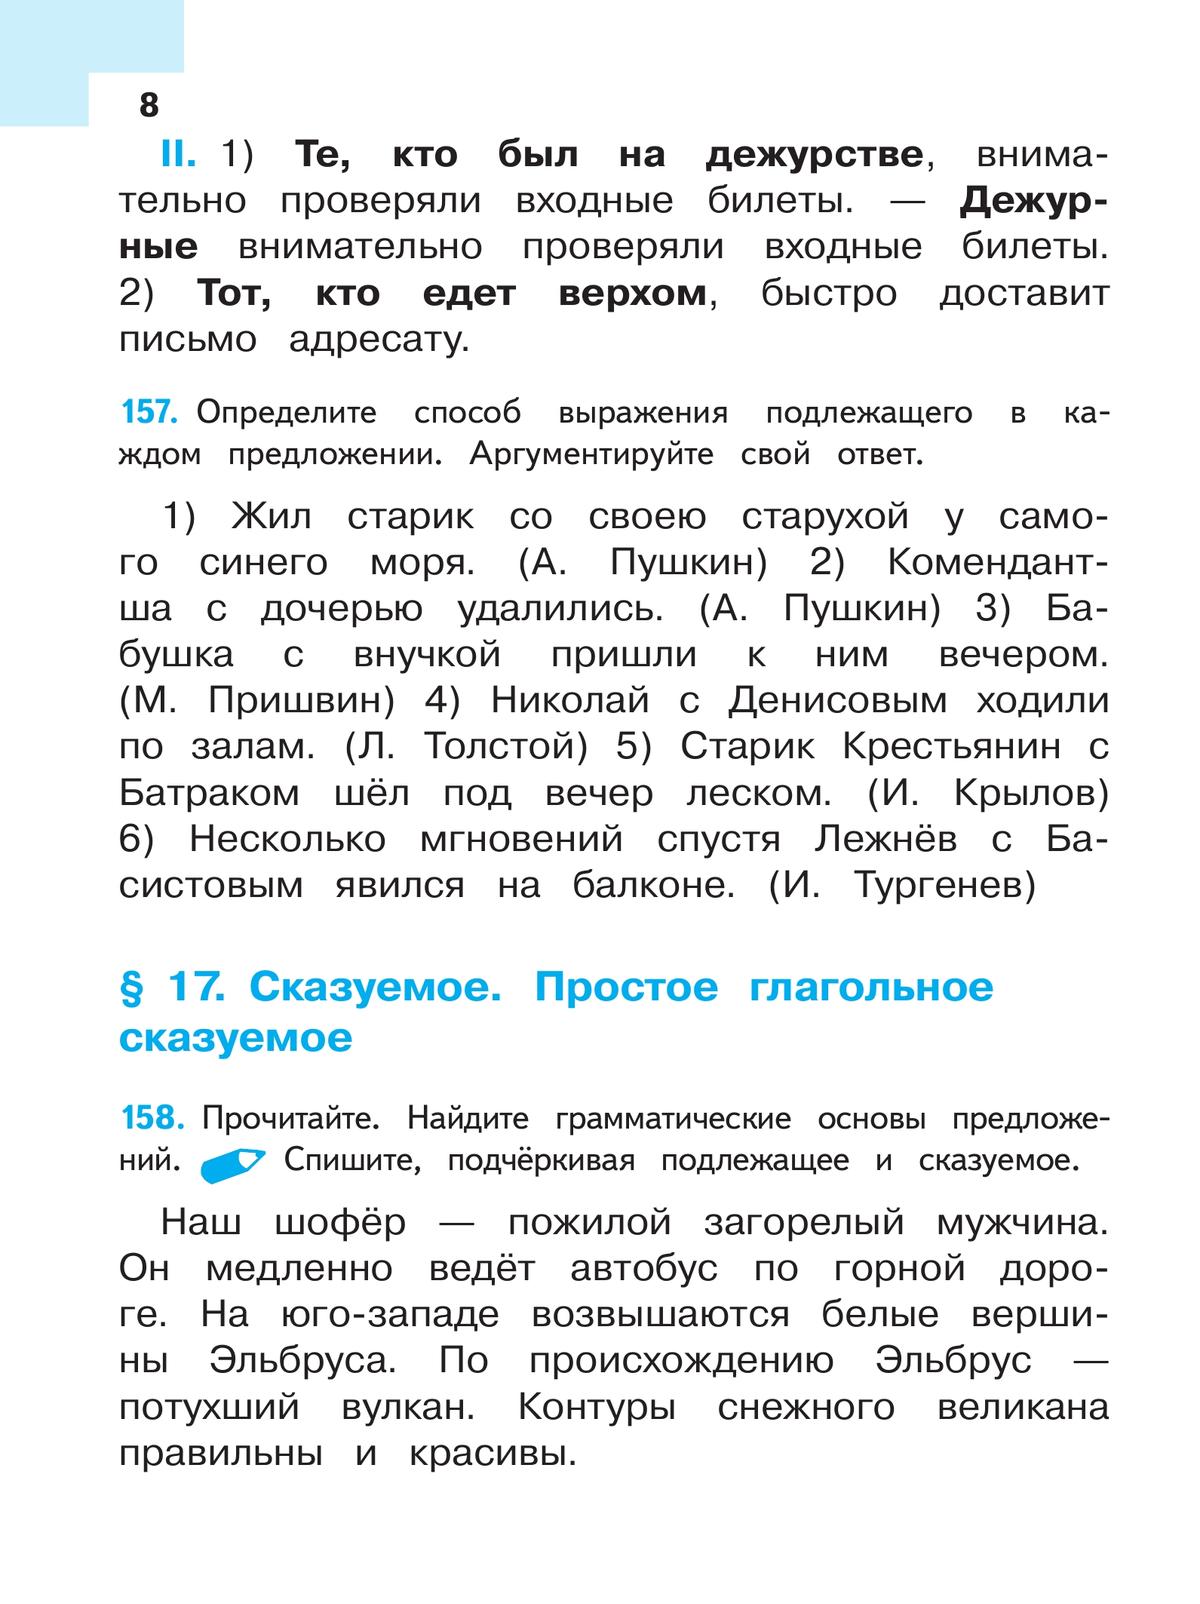 Русский язык. 8 класс. Учебное пособие. В 3 ч. Часть 2 (для слабовидящих обучающихся) 7